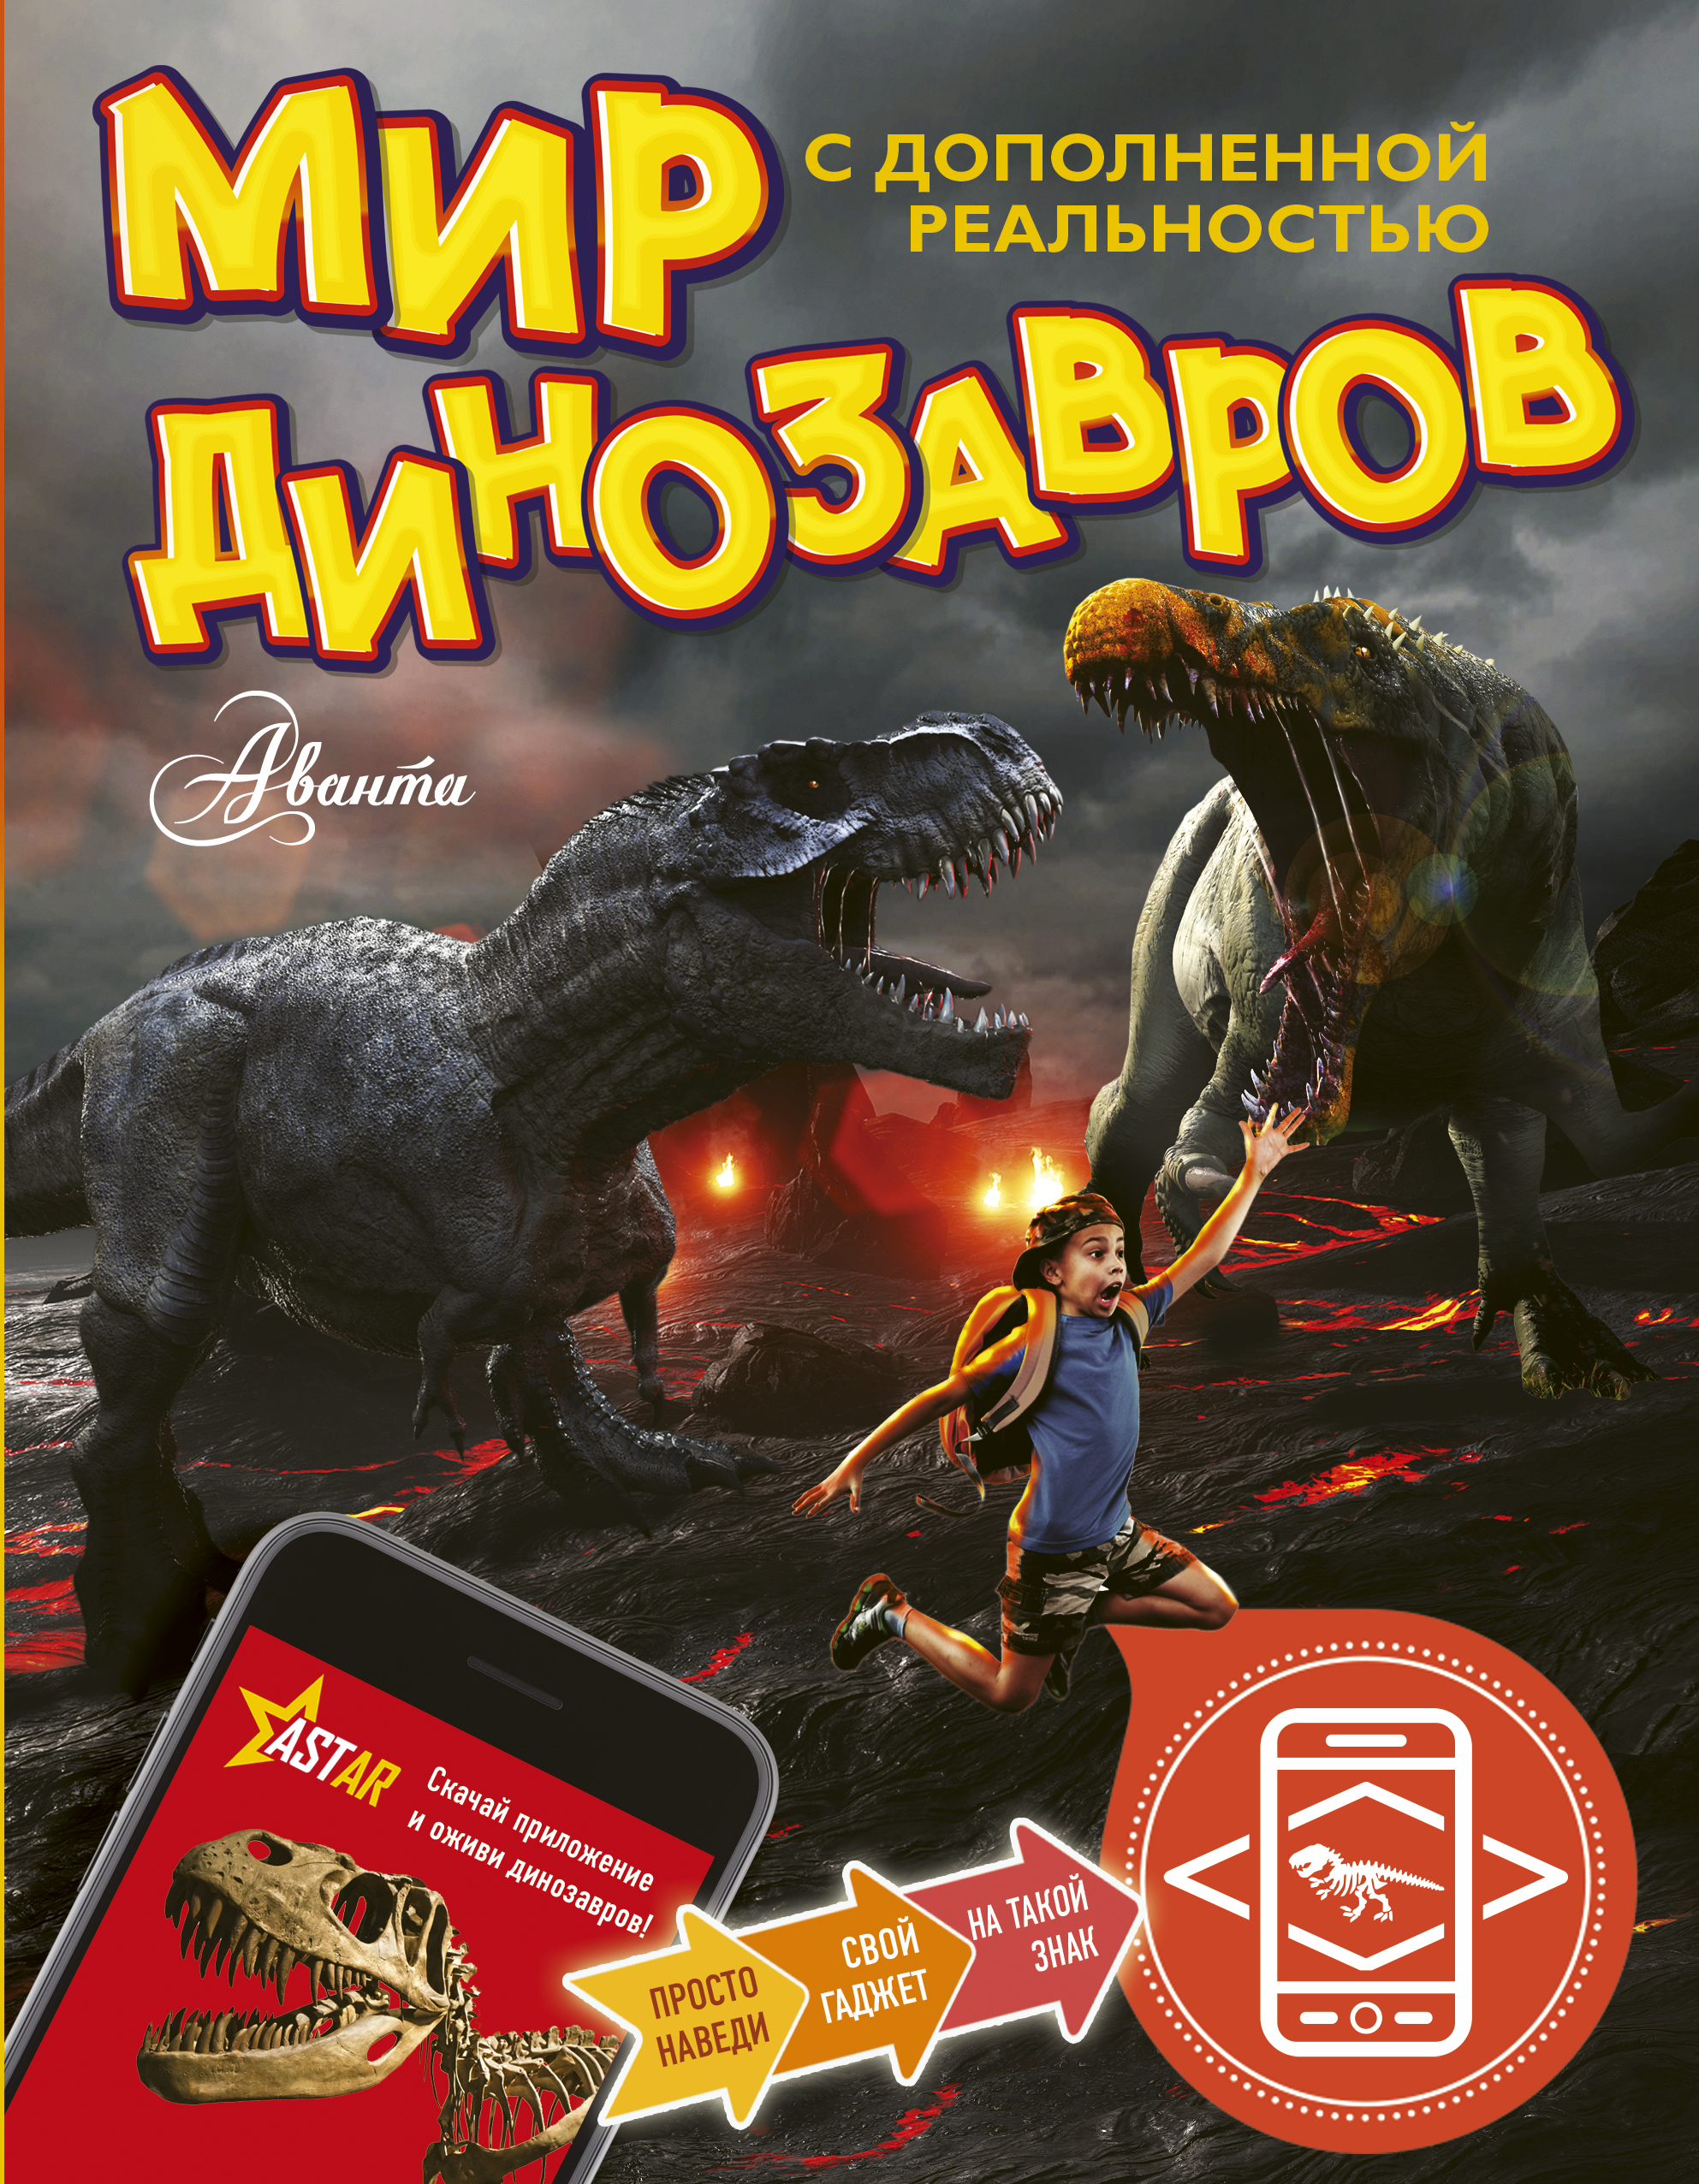 Тихонов Александр Васильевич Мир динозавров с дополненной реальностью - страница 0